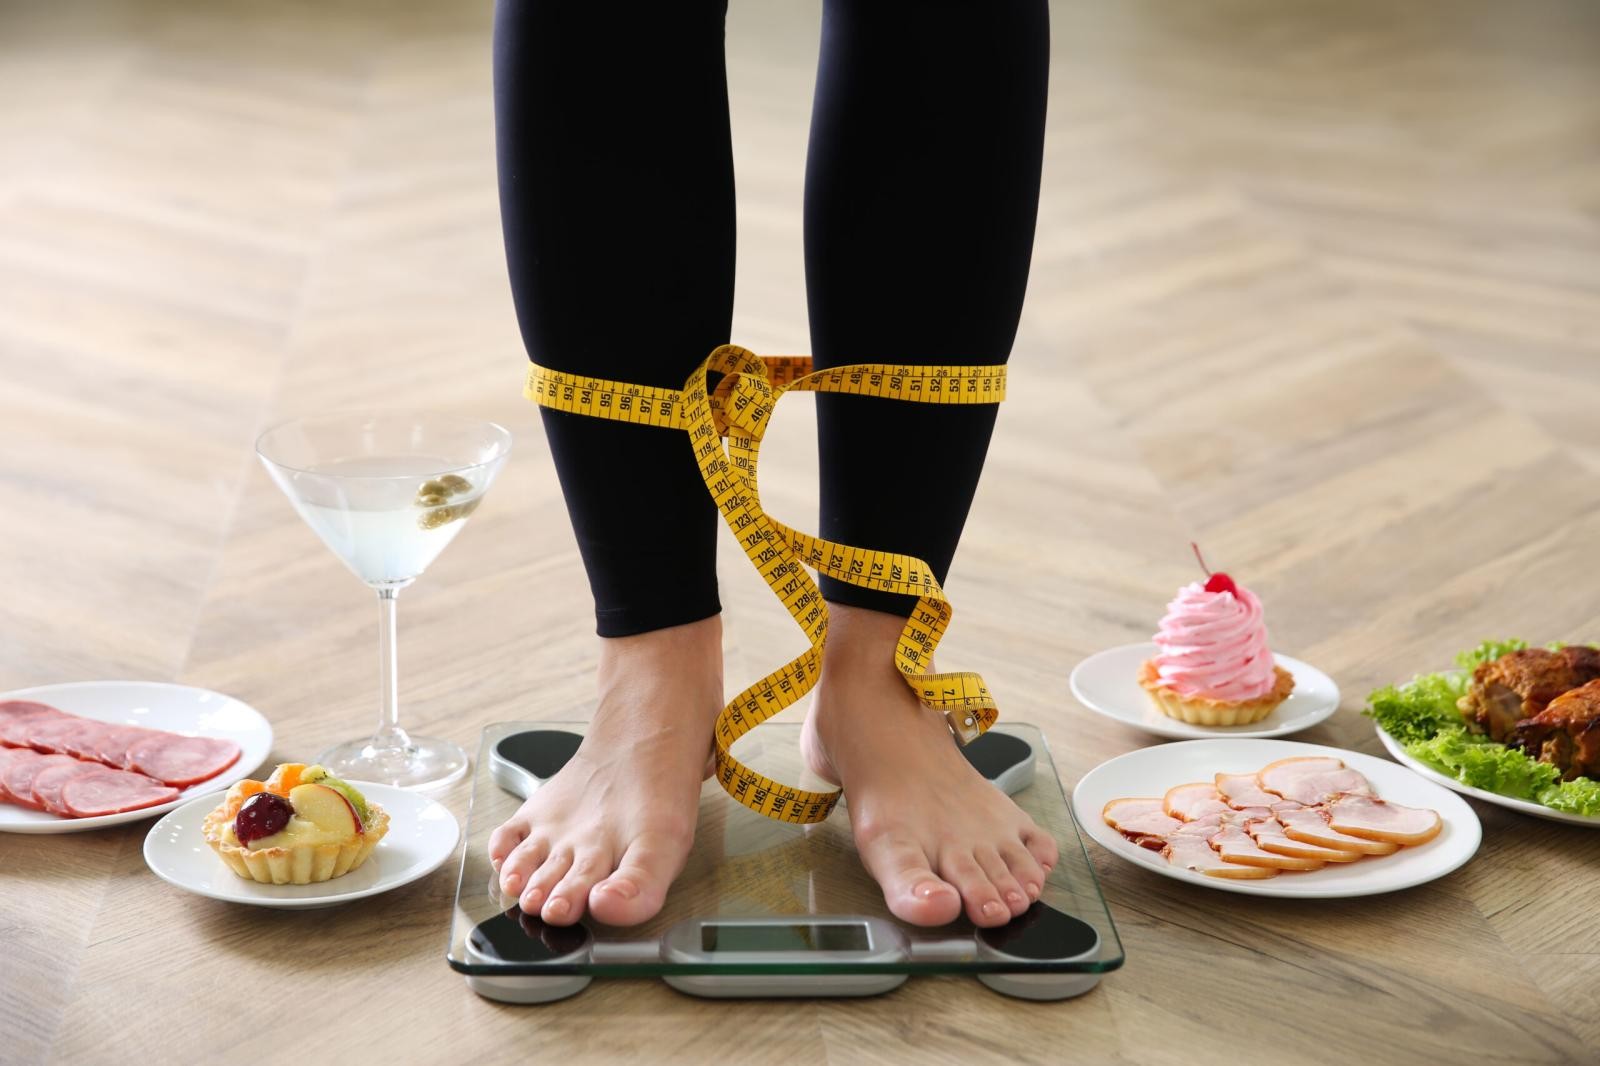 Busca por padrões estéticos pode levar a distúrbios alimentares